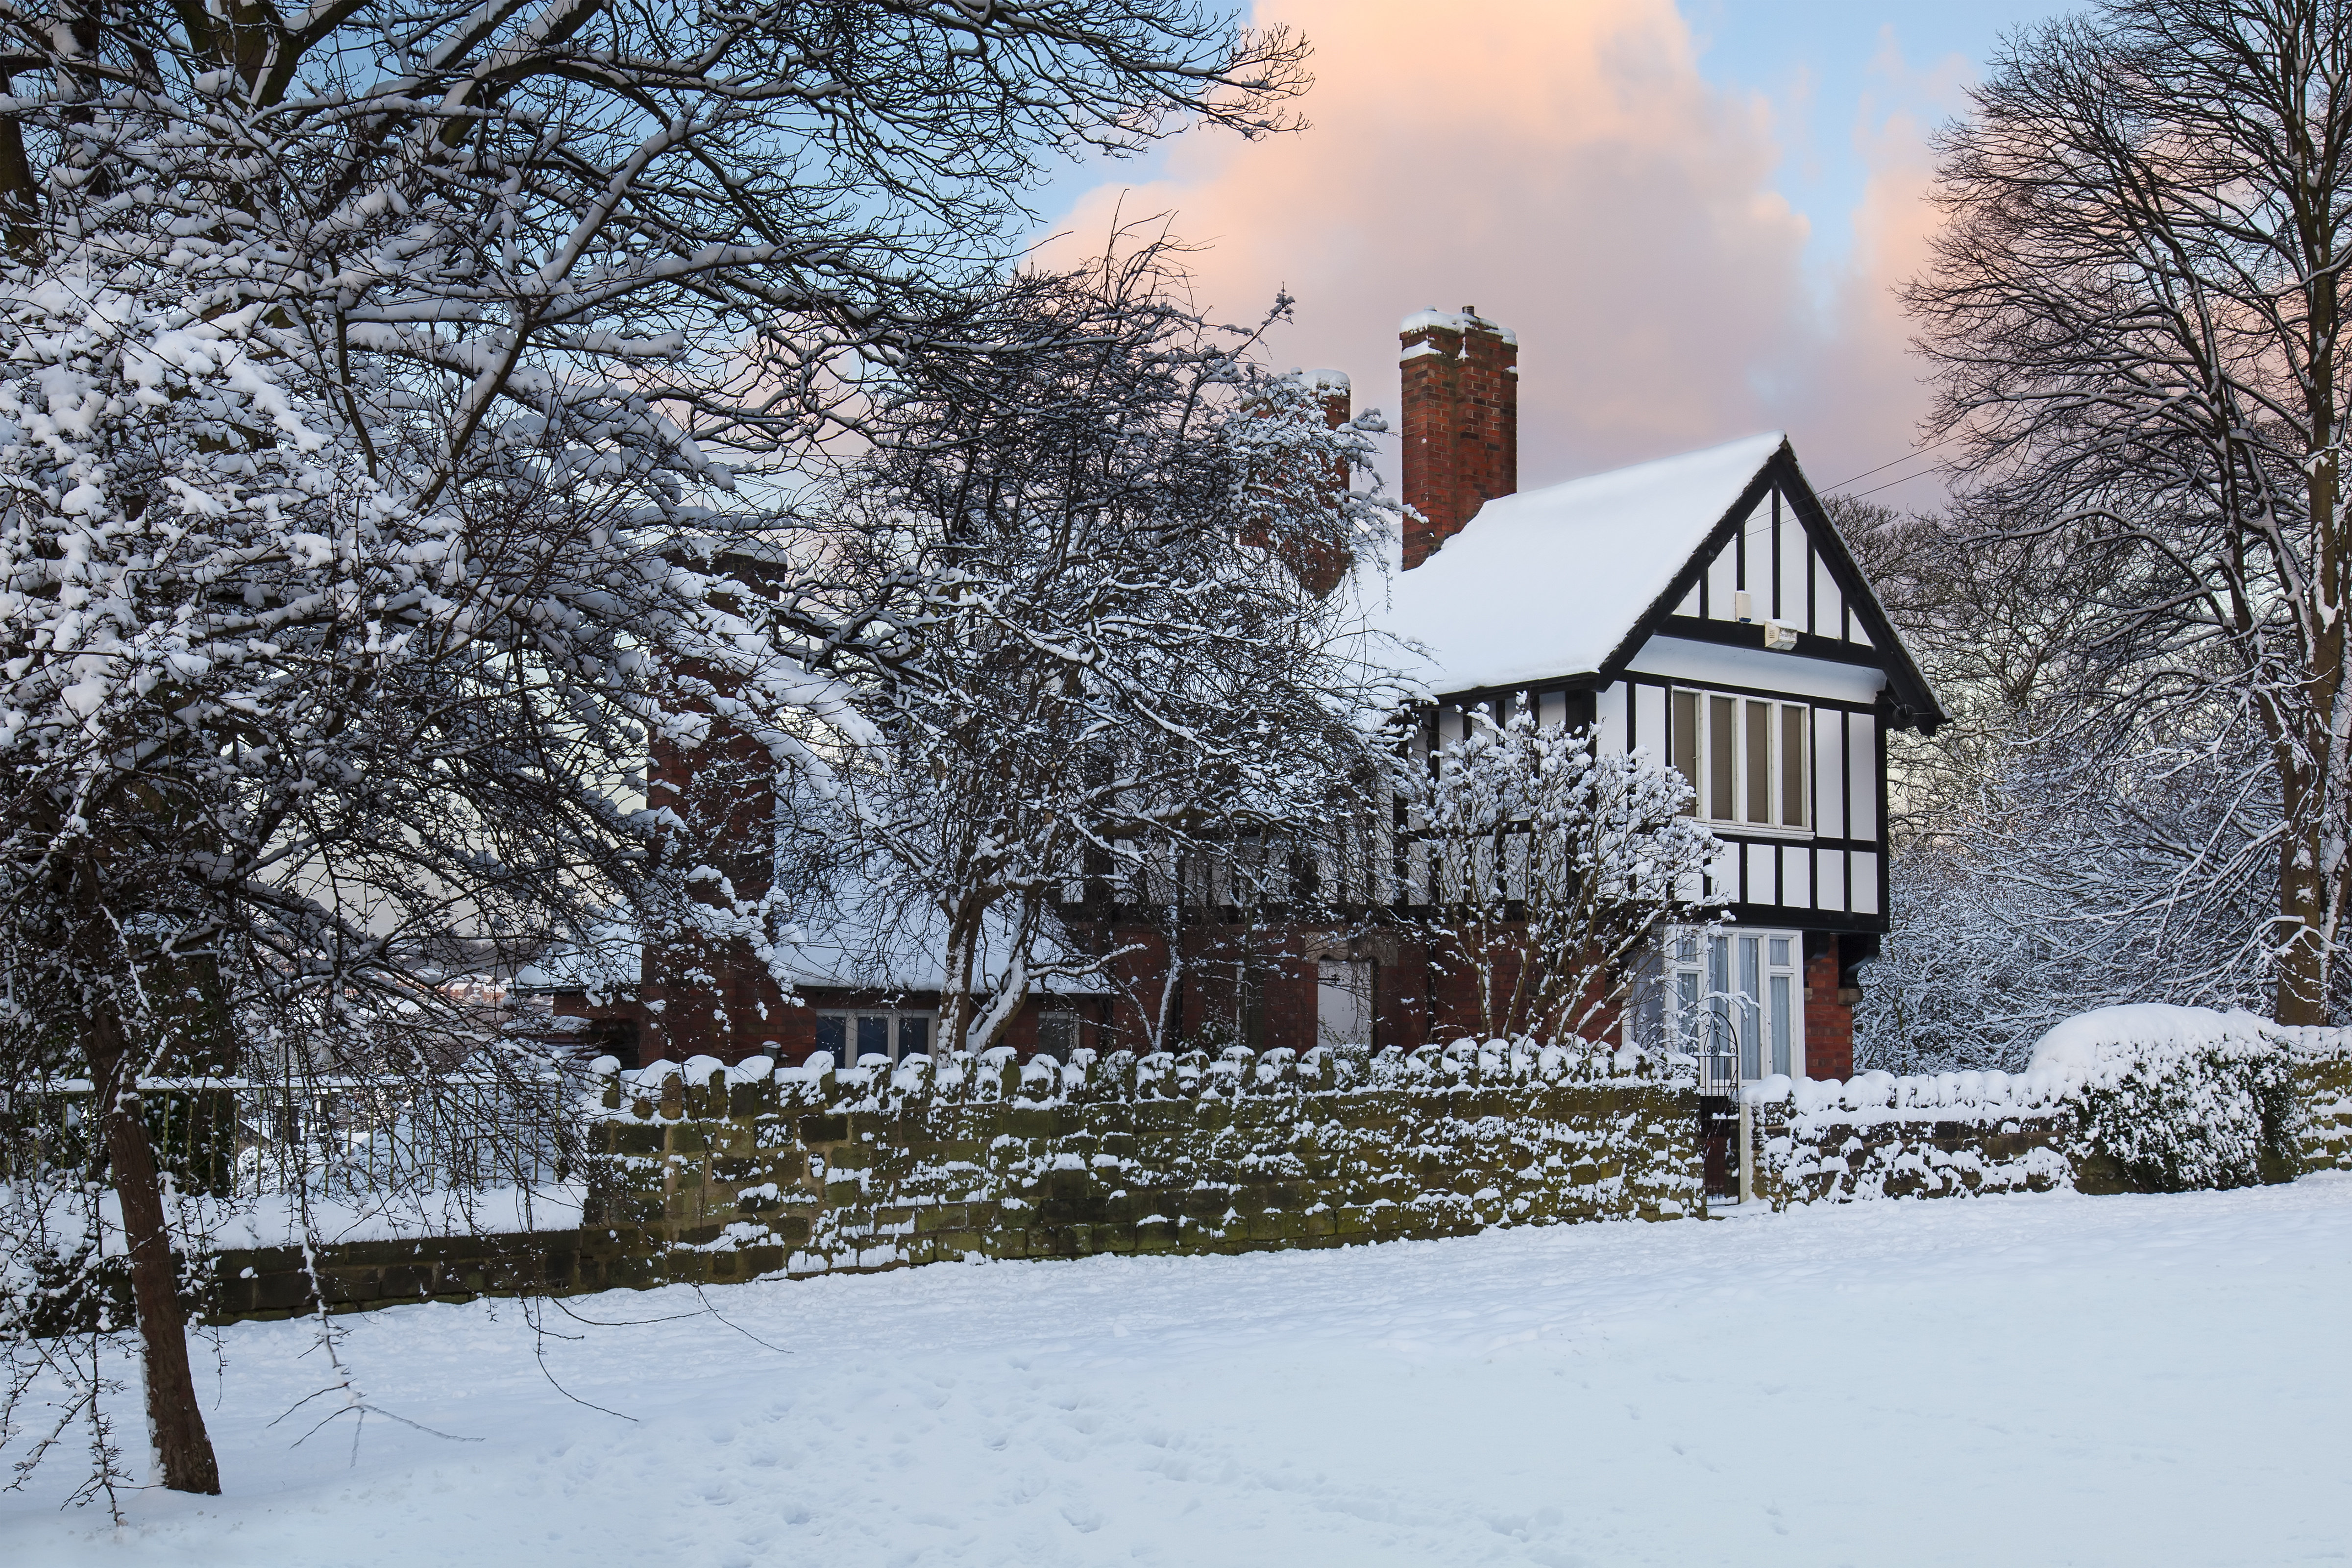 Snowed-in House on Morris Lane in Leeds, Yorkshire, UK